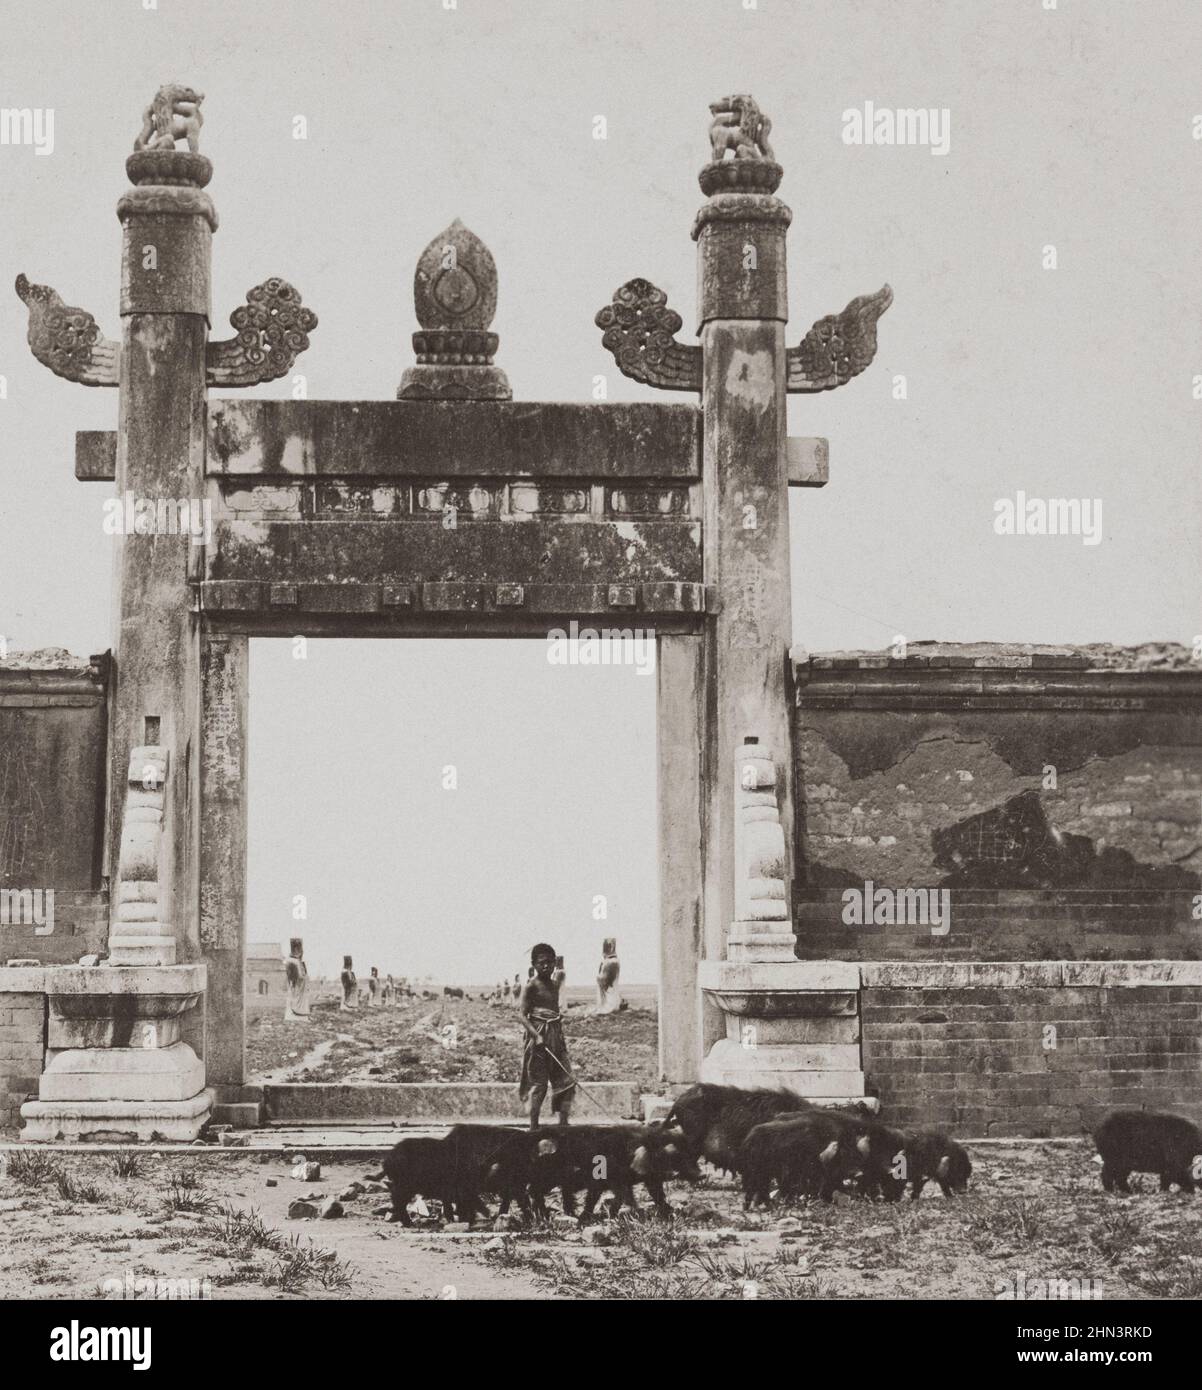 Photo d'époque des tombes royales de Ming. Porte d'entrée au bout de l'avenue des monuments. Chine du Nord. Novembre 1902 Banque D'Images